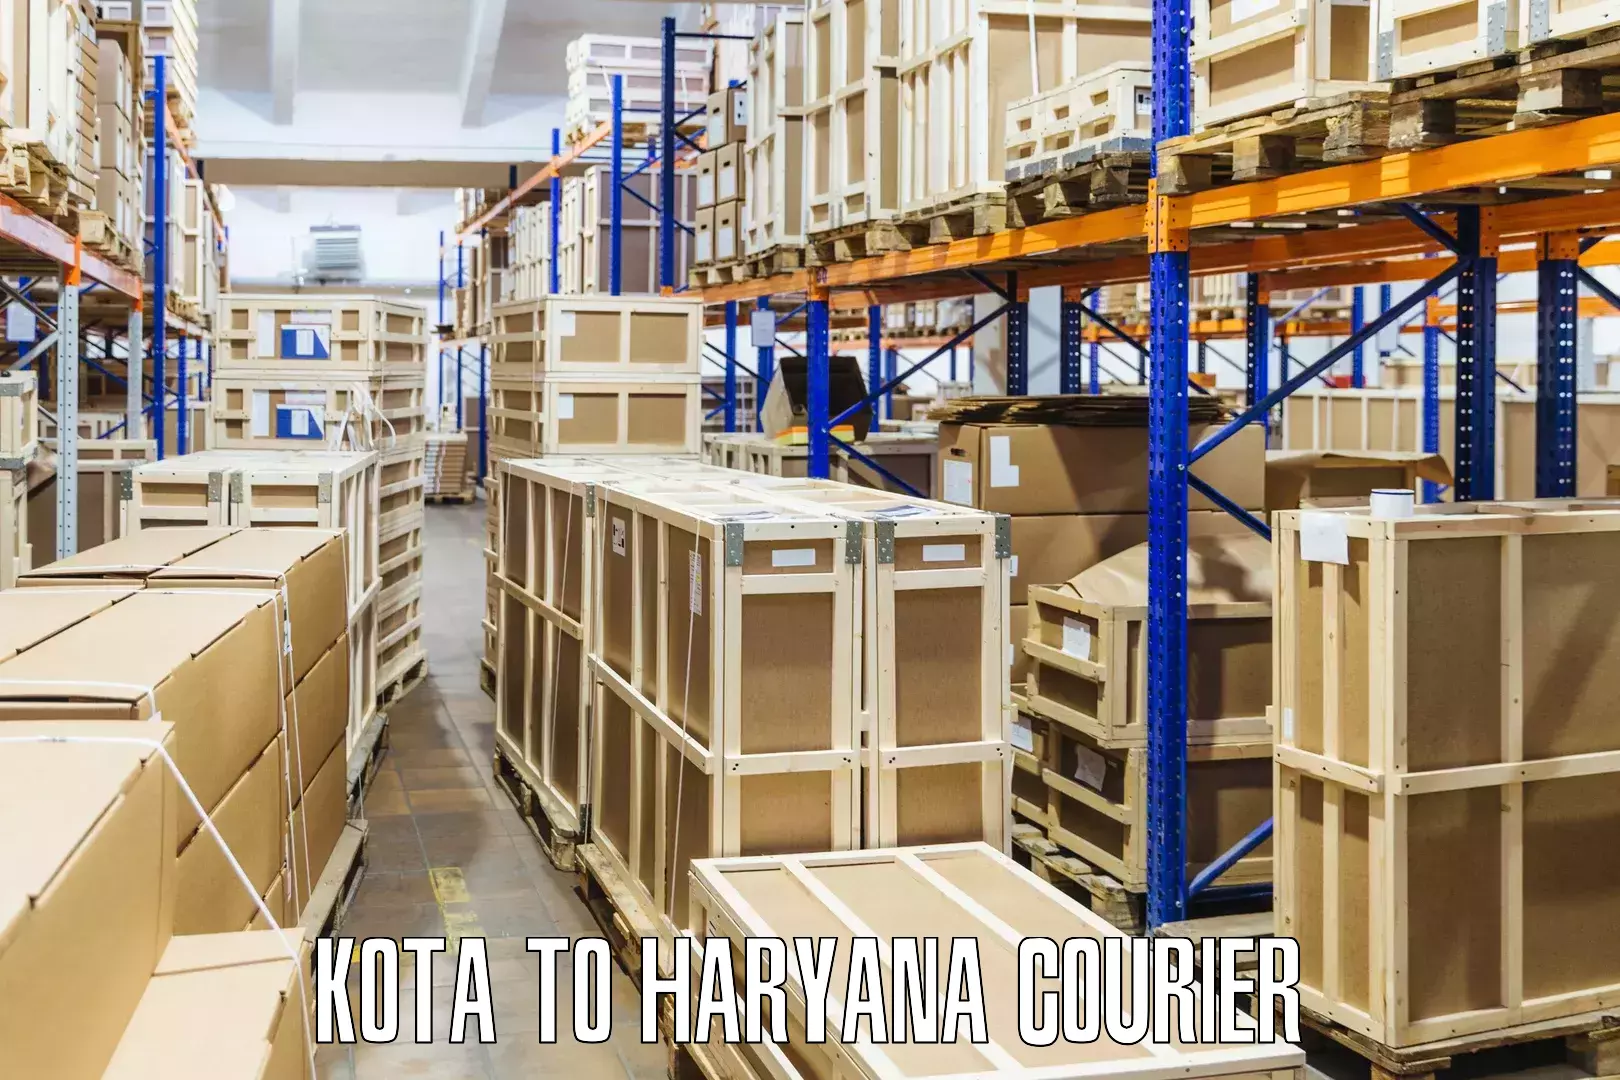 Modern delivery methods Kota to Kurukshetra